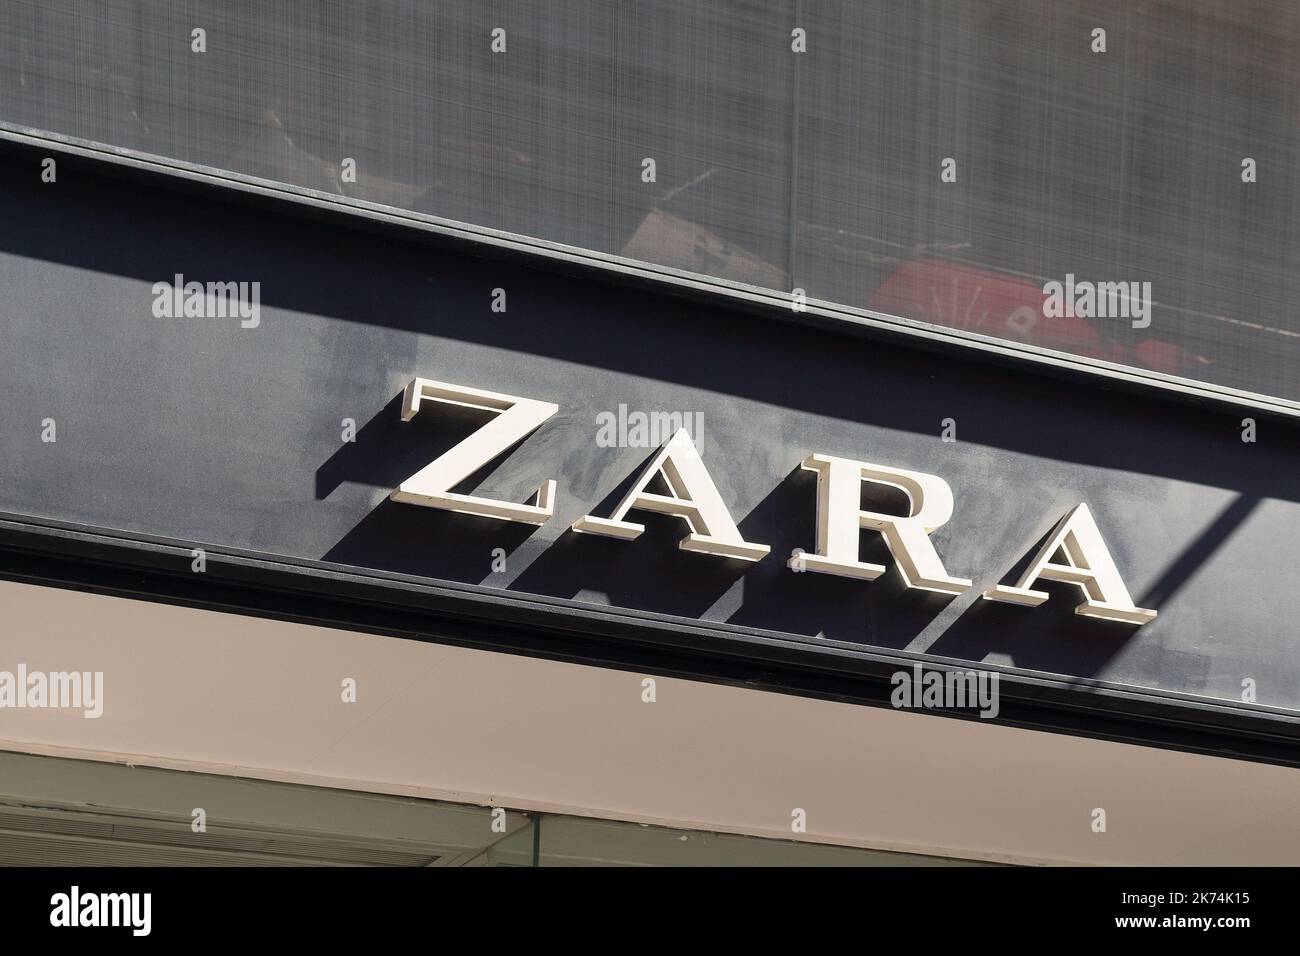 Zara shop Banque de photographies et d'images à haute résolution - Page 9 -  Alamy